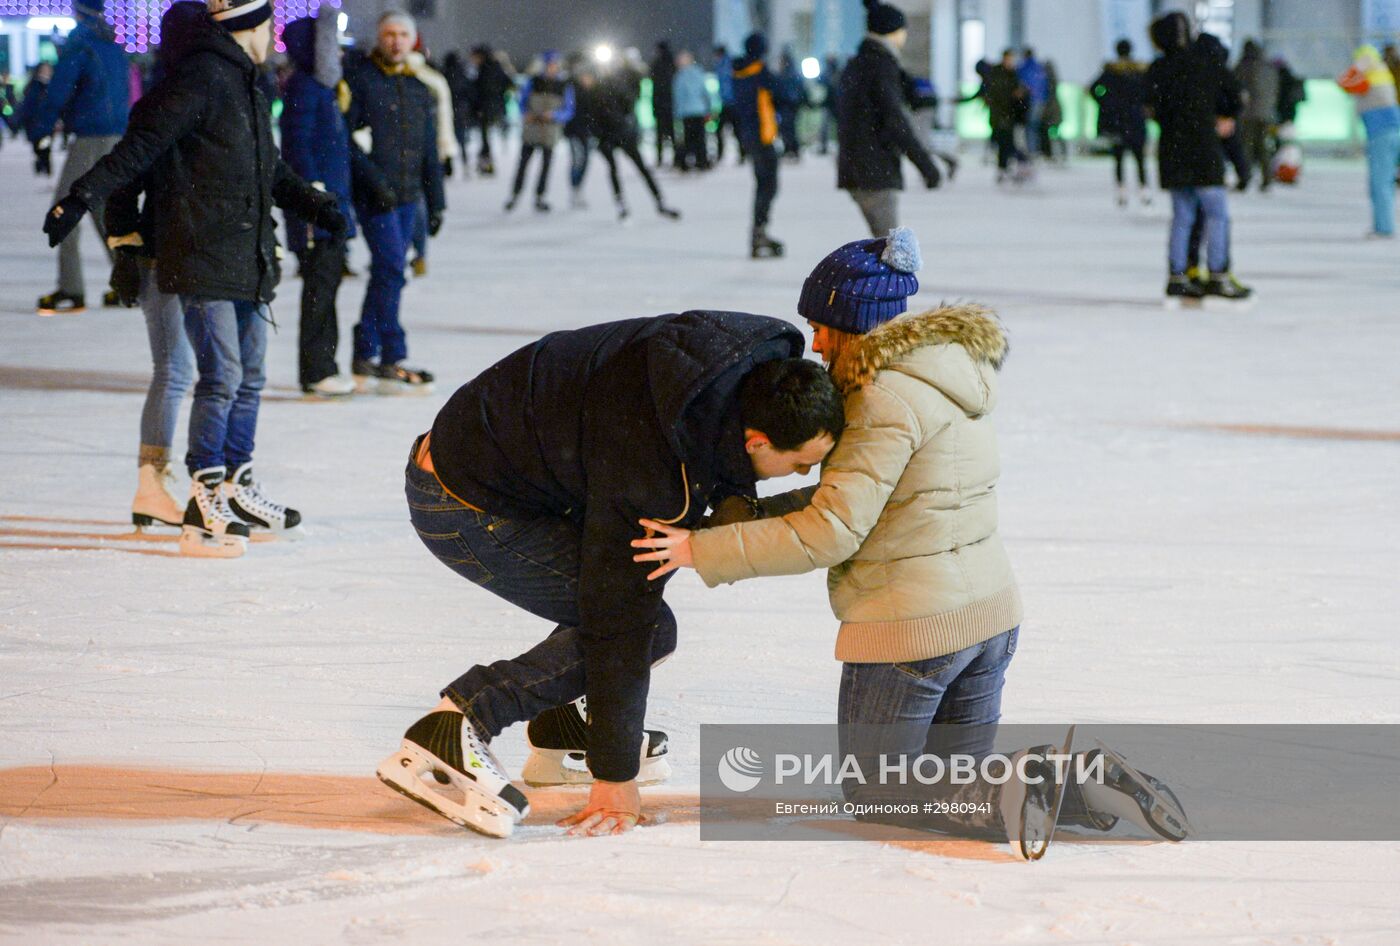 Открытие катка "Лёд" в парке Сокольники